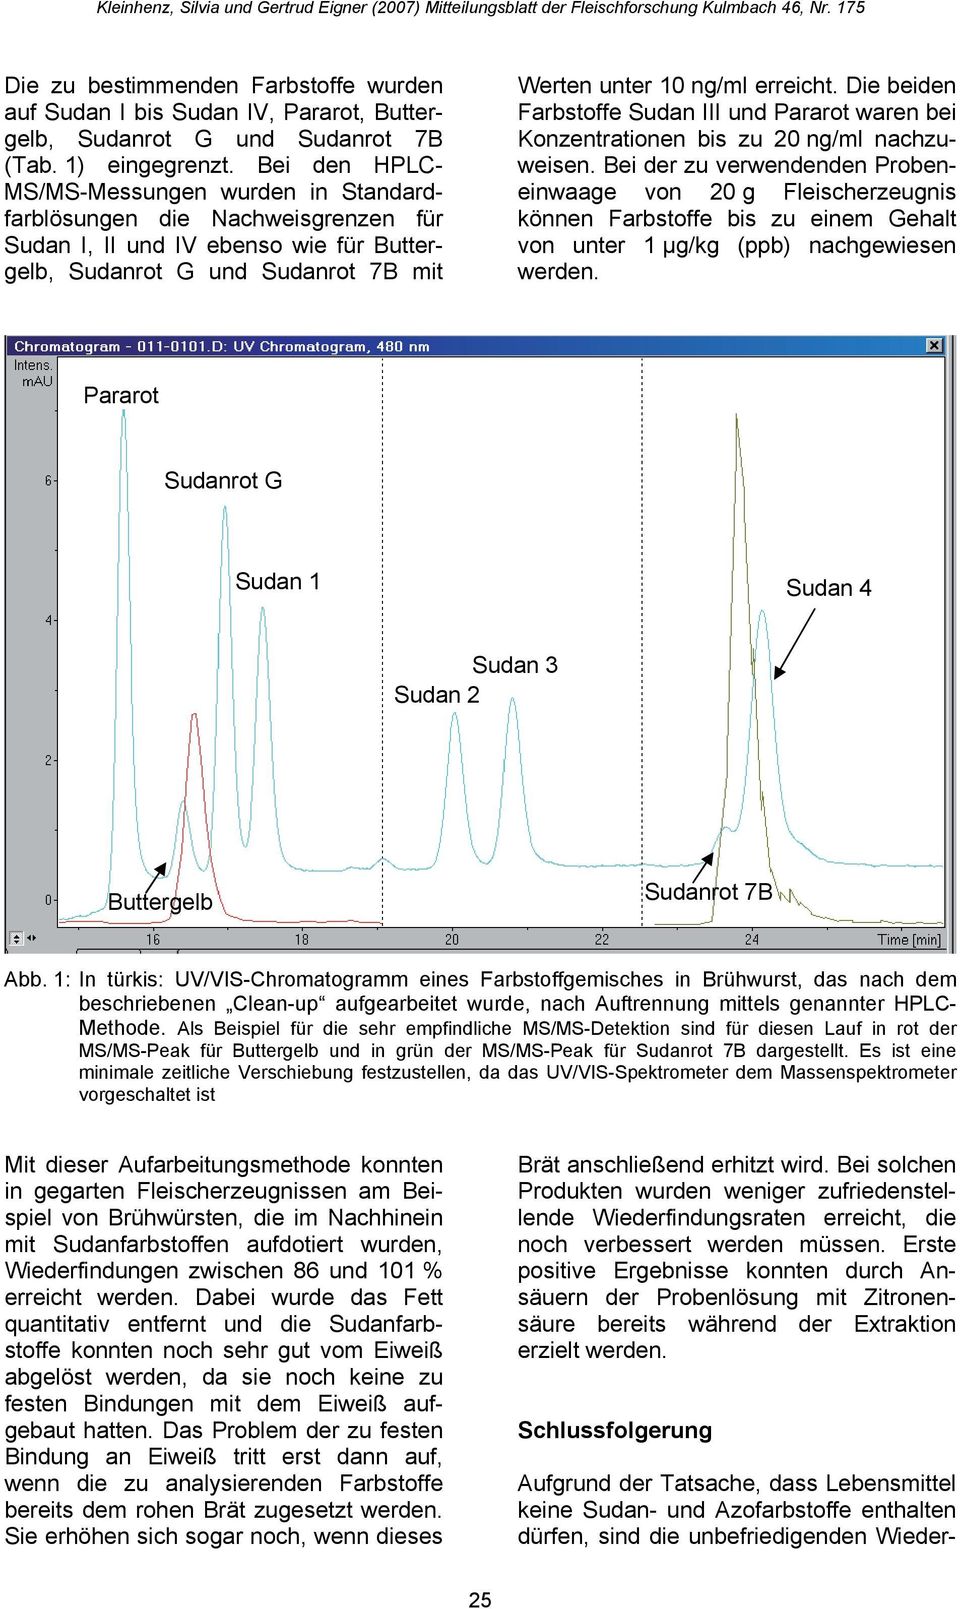 Die beiden Farbstoffe Sudan III und Pararot waren bei Konzentrationen bis zu 20 ng/ml nachzuweisen.